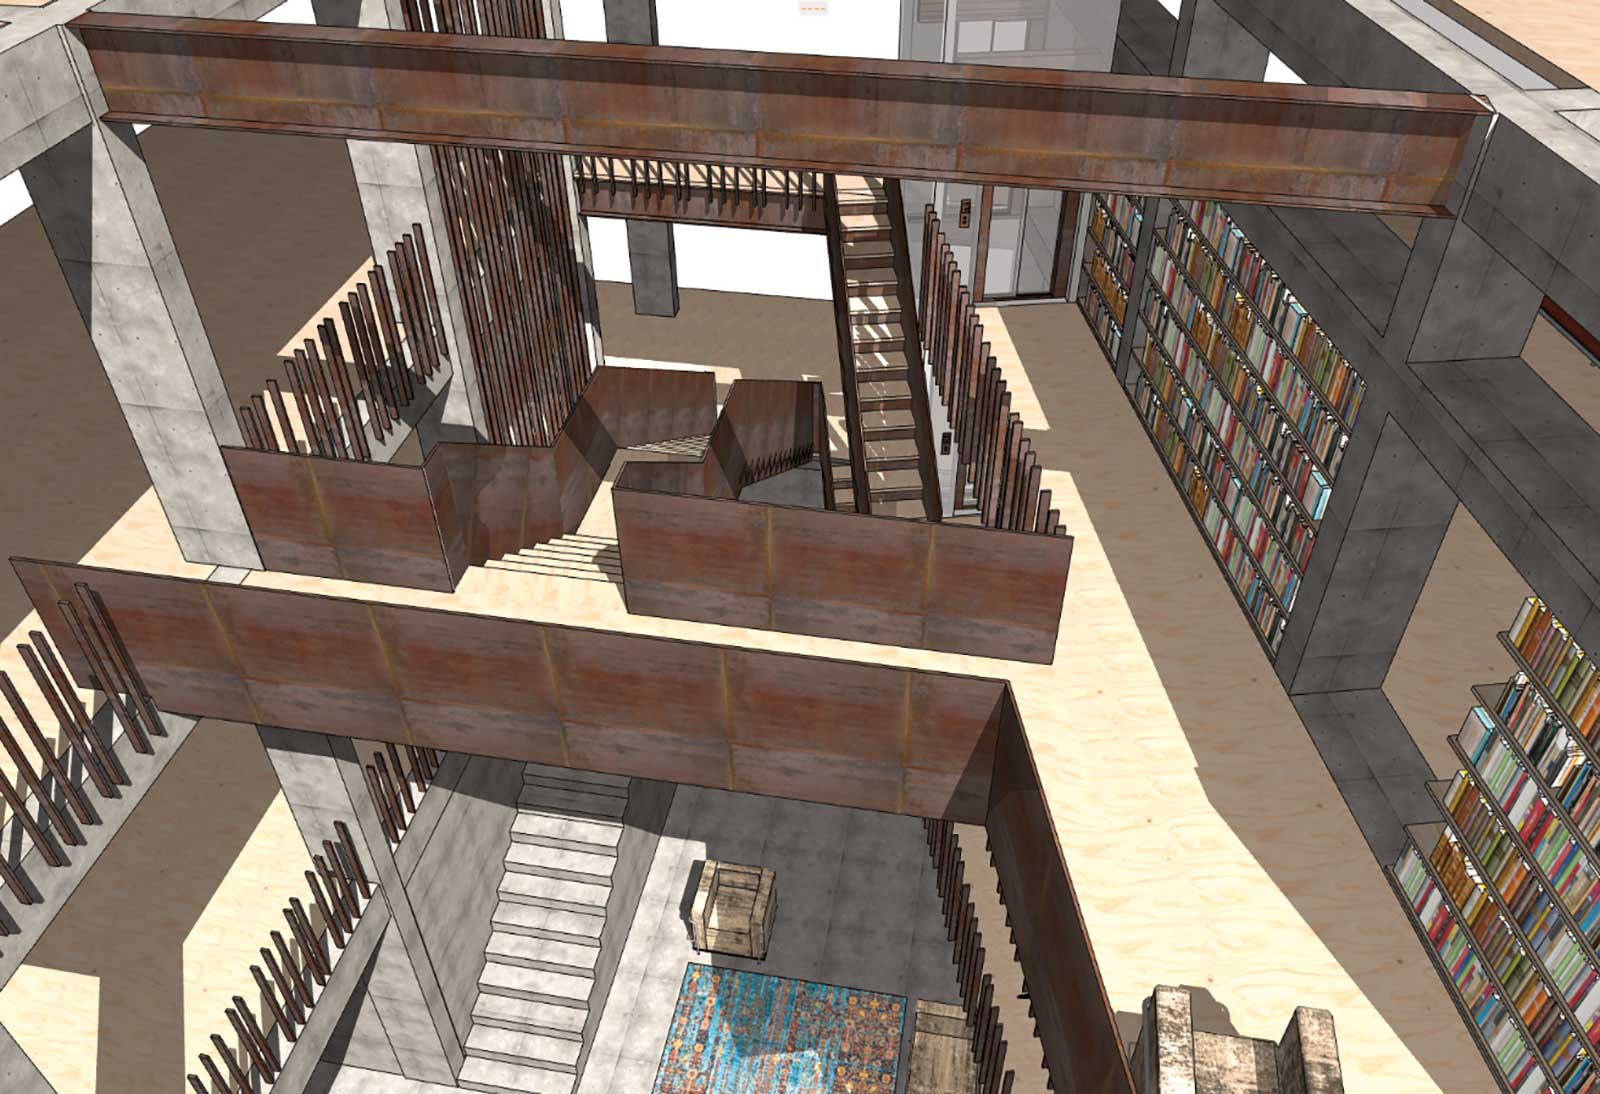 Treppenanlage mit Bibliothek